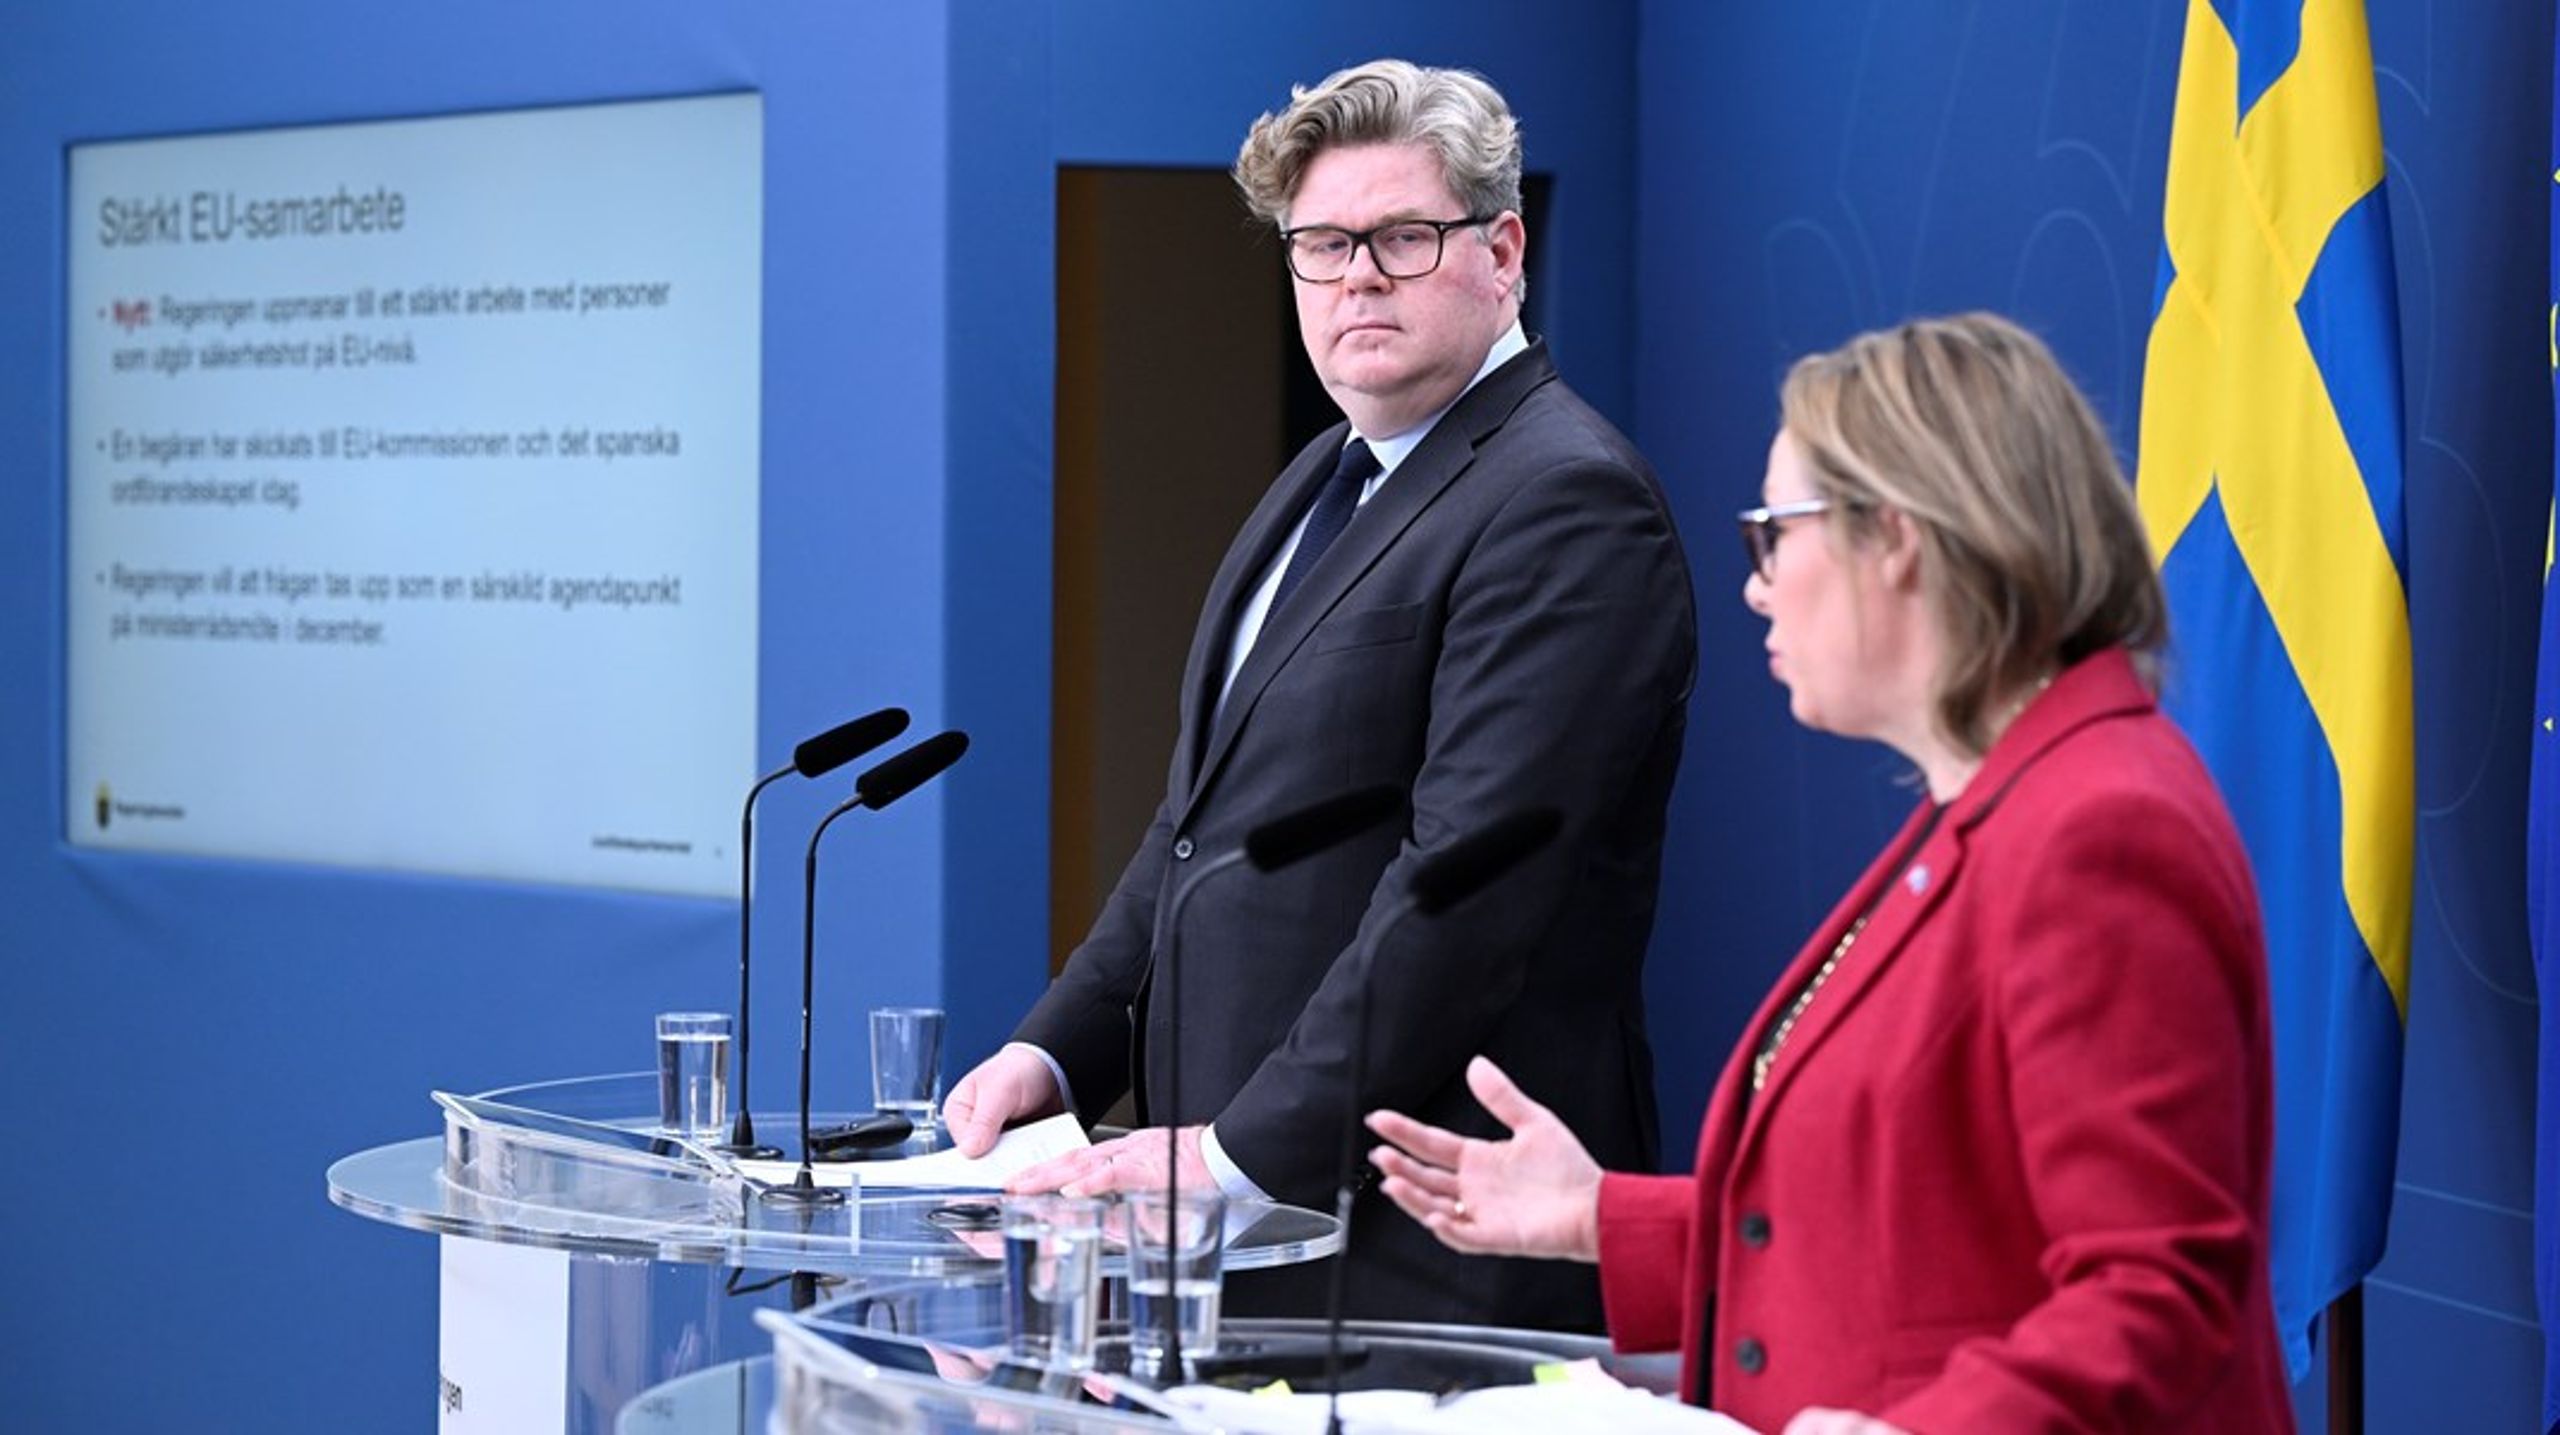 Justitieminister Gunnar Strömmer (M) och migrationsminister Maria Malmer Stenergard (M) samlade till pressträff på måndagen för att presentera åtgärder för att stärka Sveriges säkerhet.&nbsp;